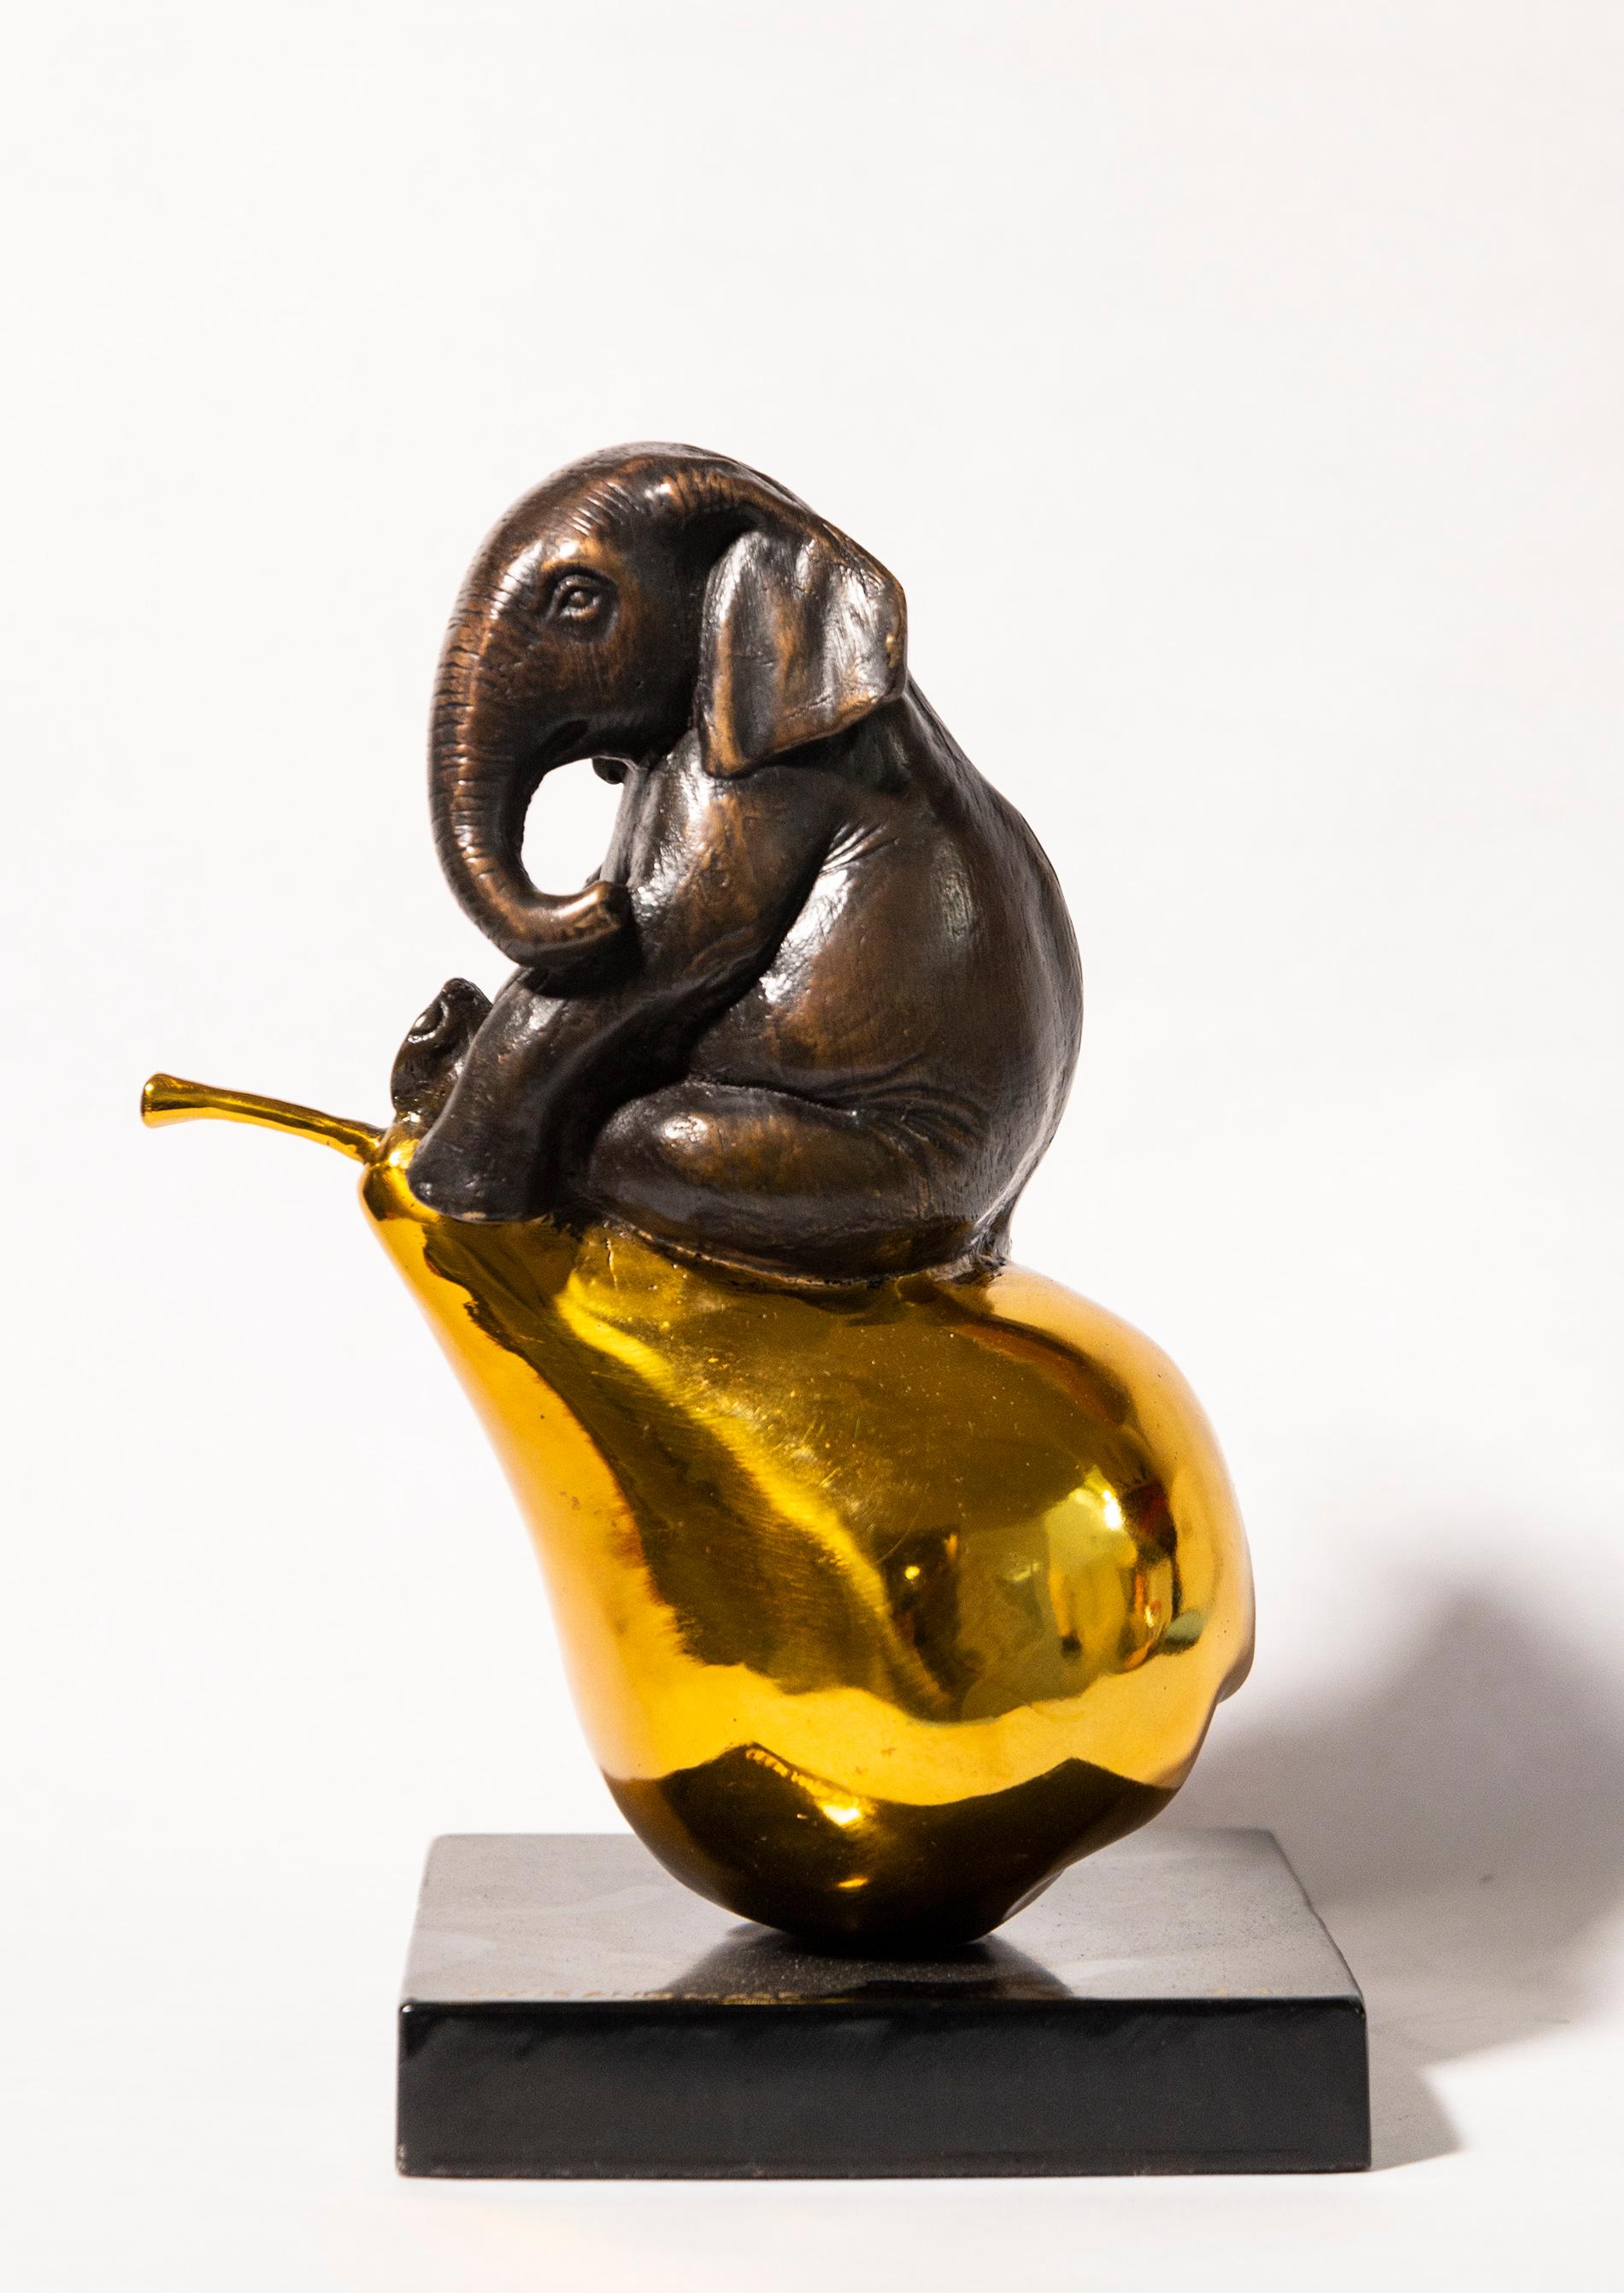 Figurative Sculpture Gillie and Marc Schattner - L'éléphant n'était qu'une poire 2/40 - sculpture ludique et contemporaine en bronze